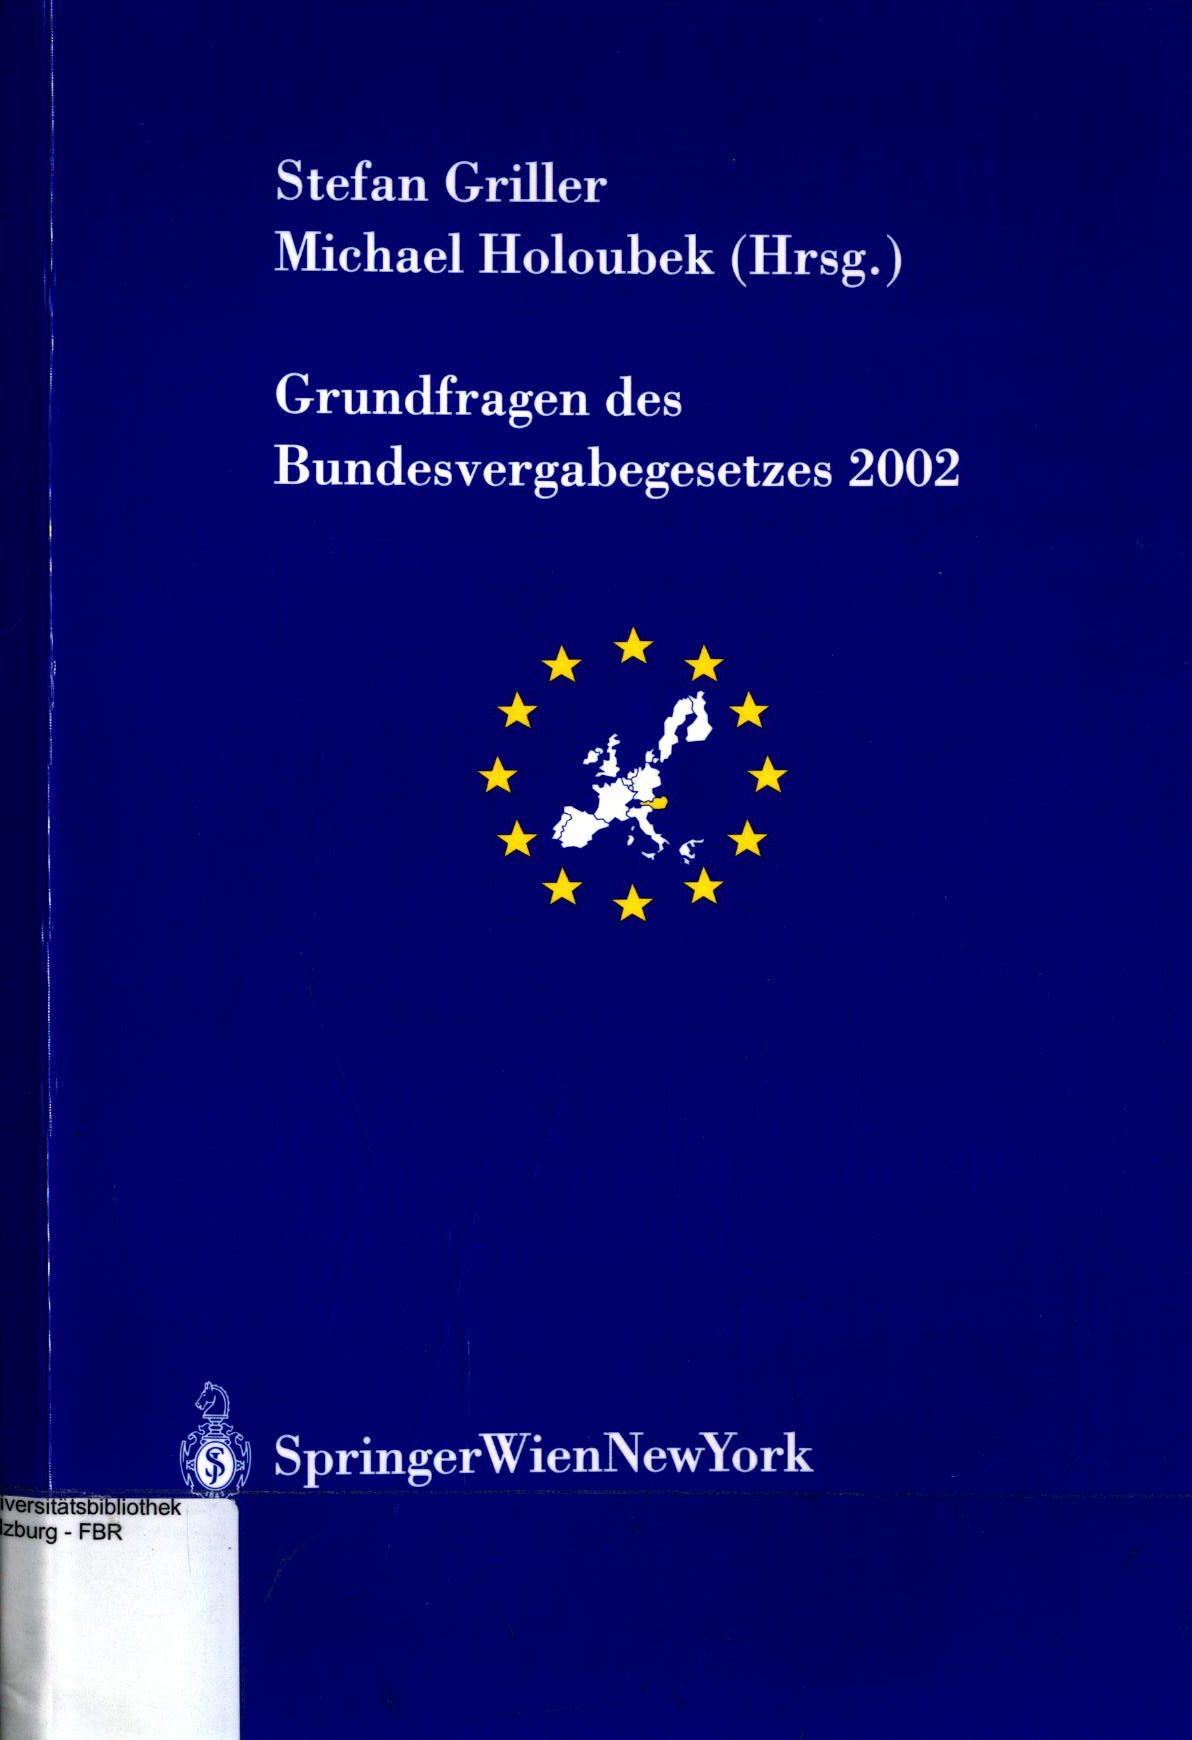 Grundfragen des Bundesvergabegesetzes 2002  Schriftenreihe der Österreichischen Gesellschaft für Europaforschung (ECSA-Austria) ; Band 7 - Griller, Stefan und Michael Holoubek